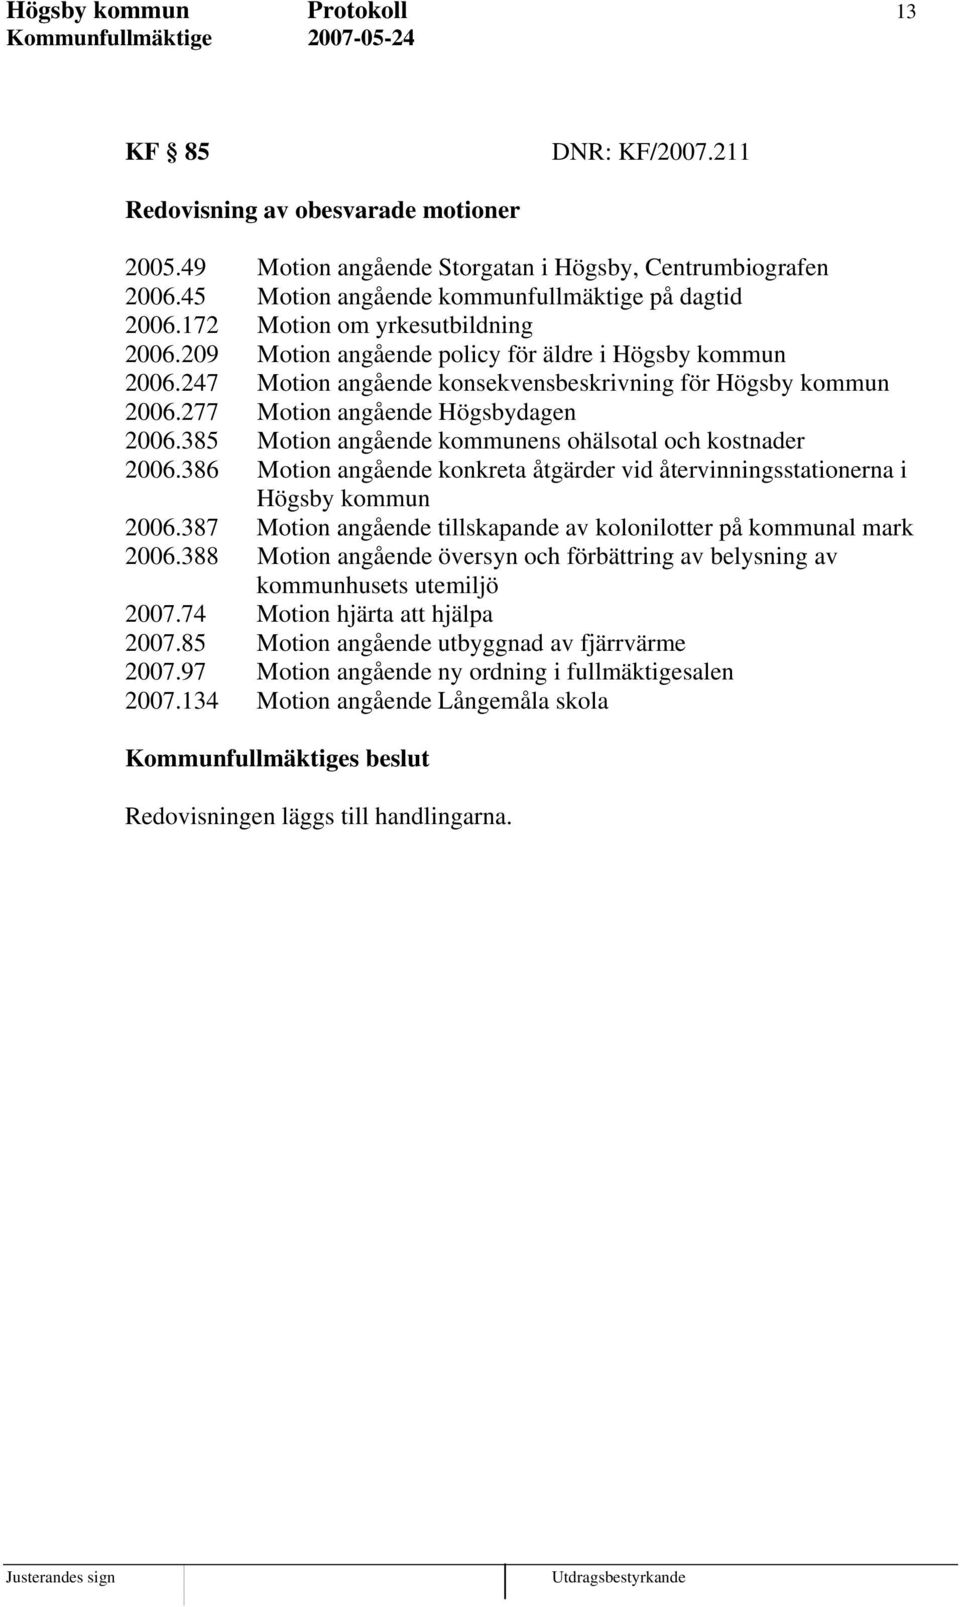 247 Motion angående konsekvensbeskrivning för Högsby kommun 2006.277 Motion angående Högsbydagen 2006.385 Motion angående kommunens ohälsotal och kostnader 2006.